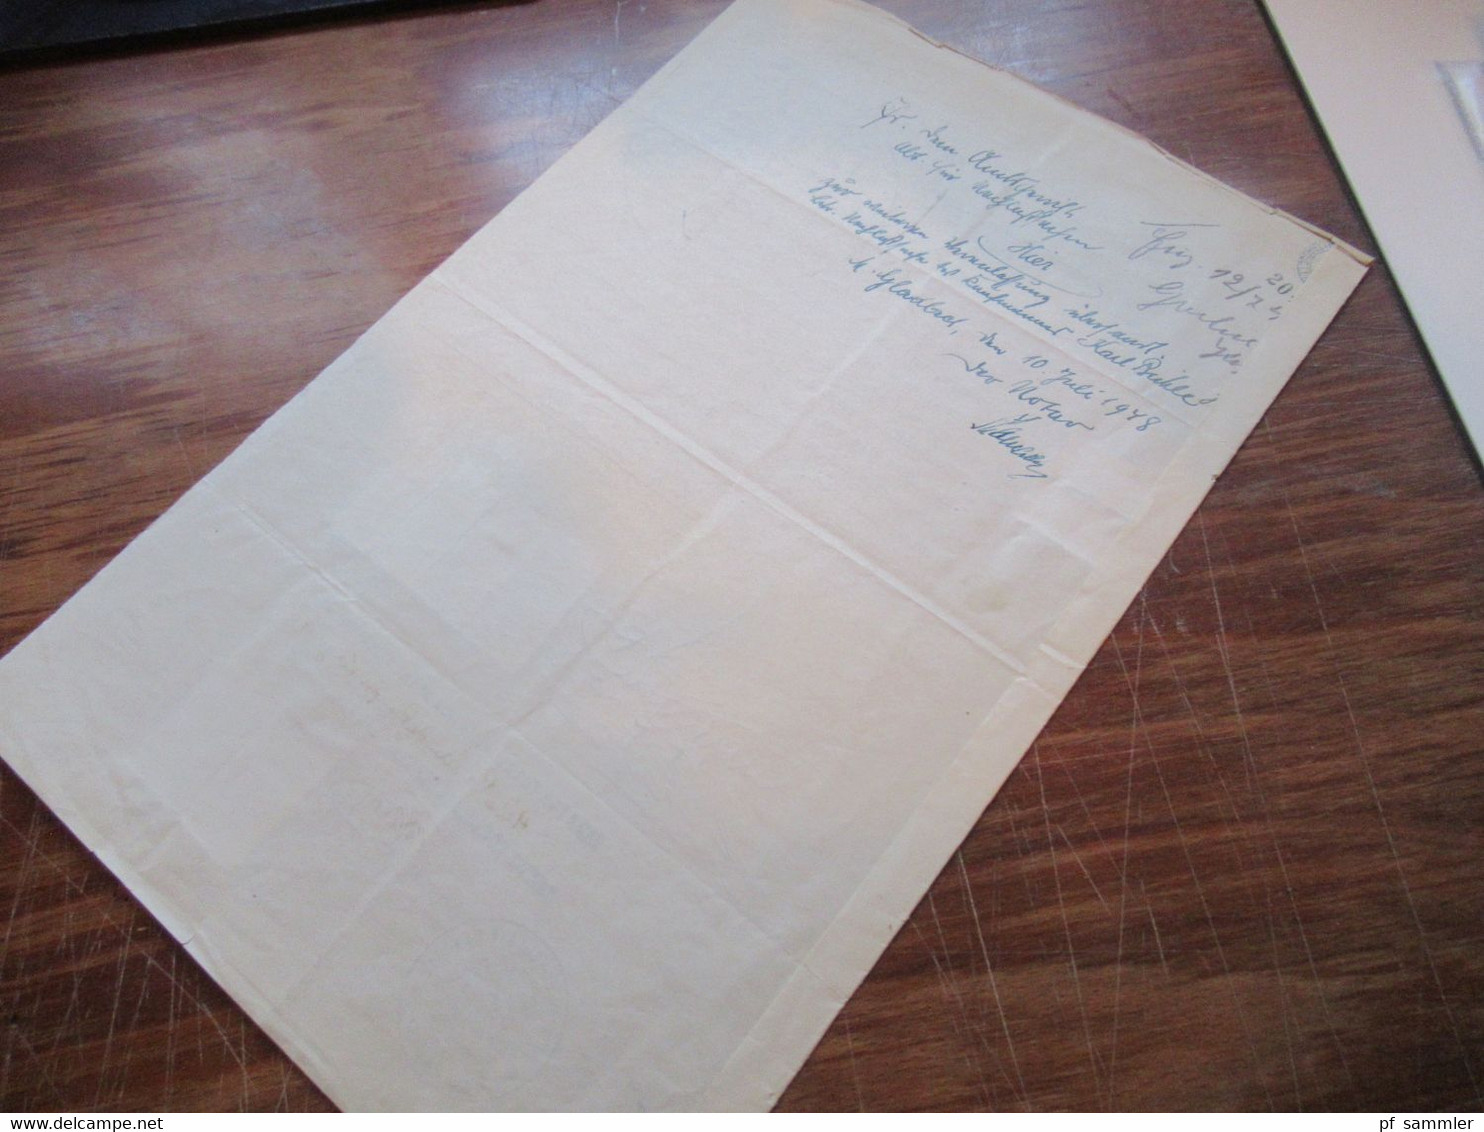 1948 Dokument mit Fiskalmarken / Revenues Brasilien und Consular Service GB / British Consulate General Sao Paulo